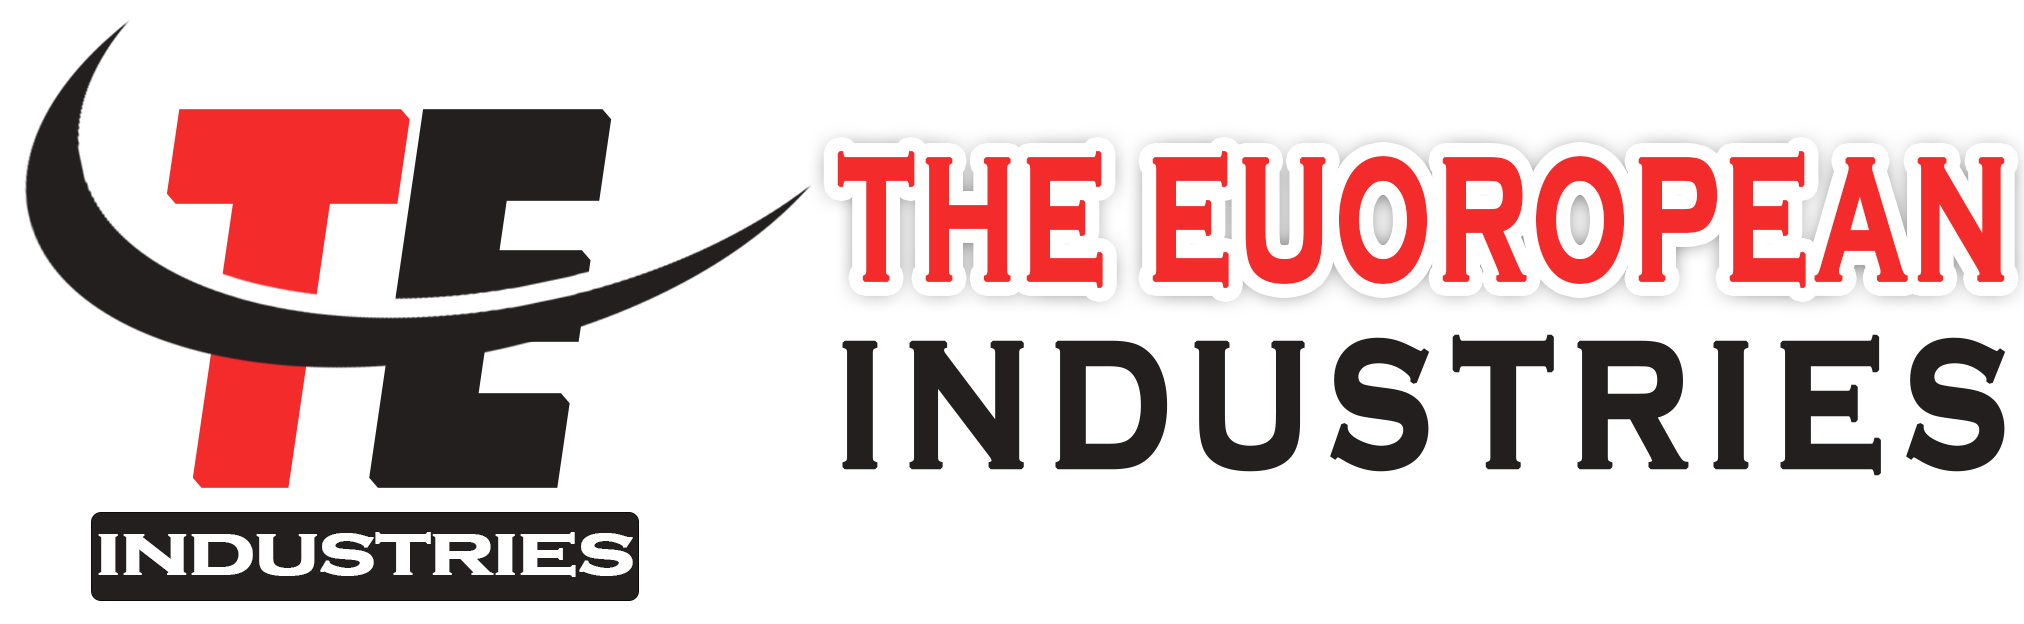 The European Industries